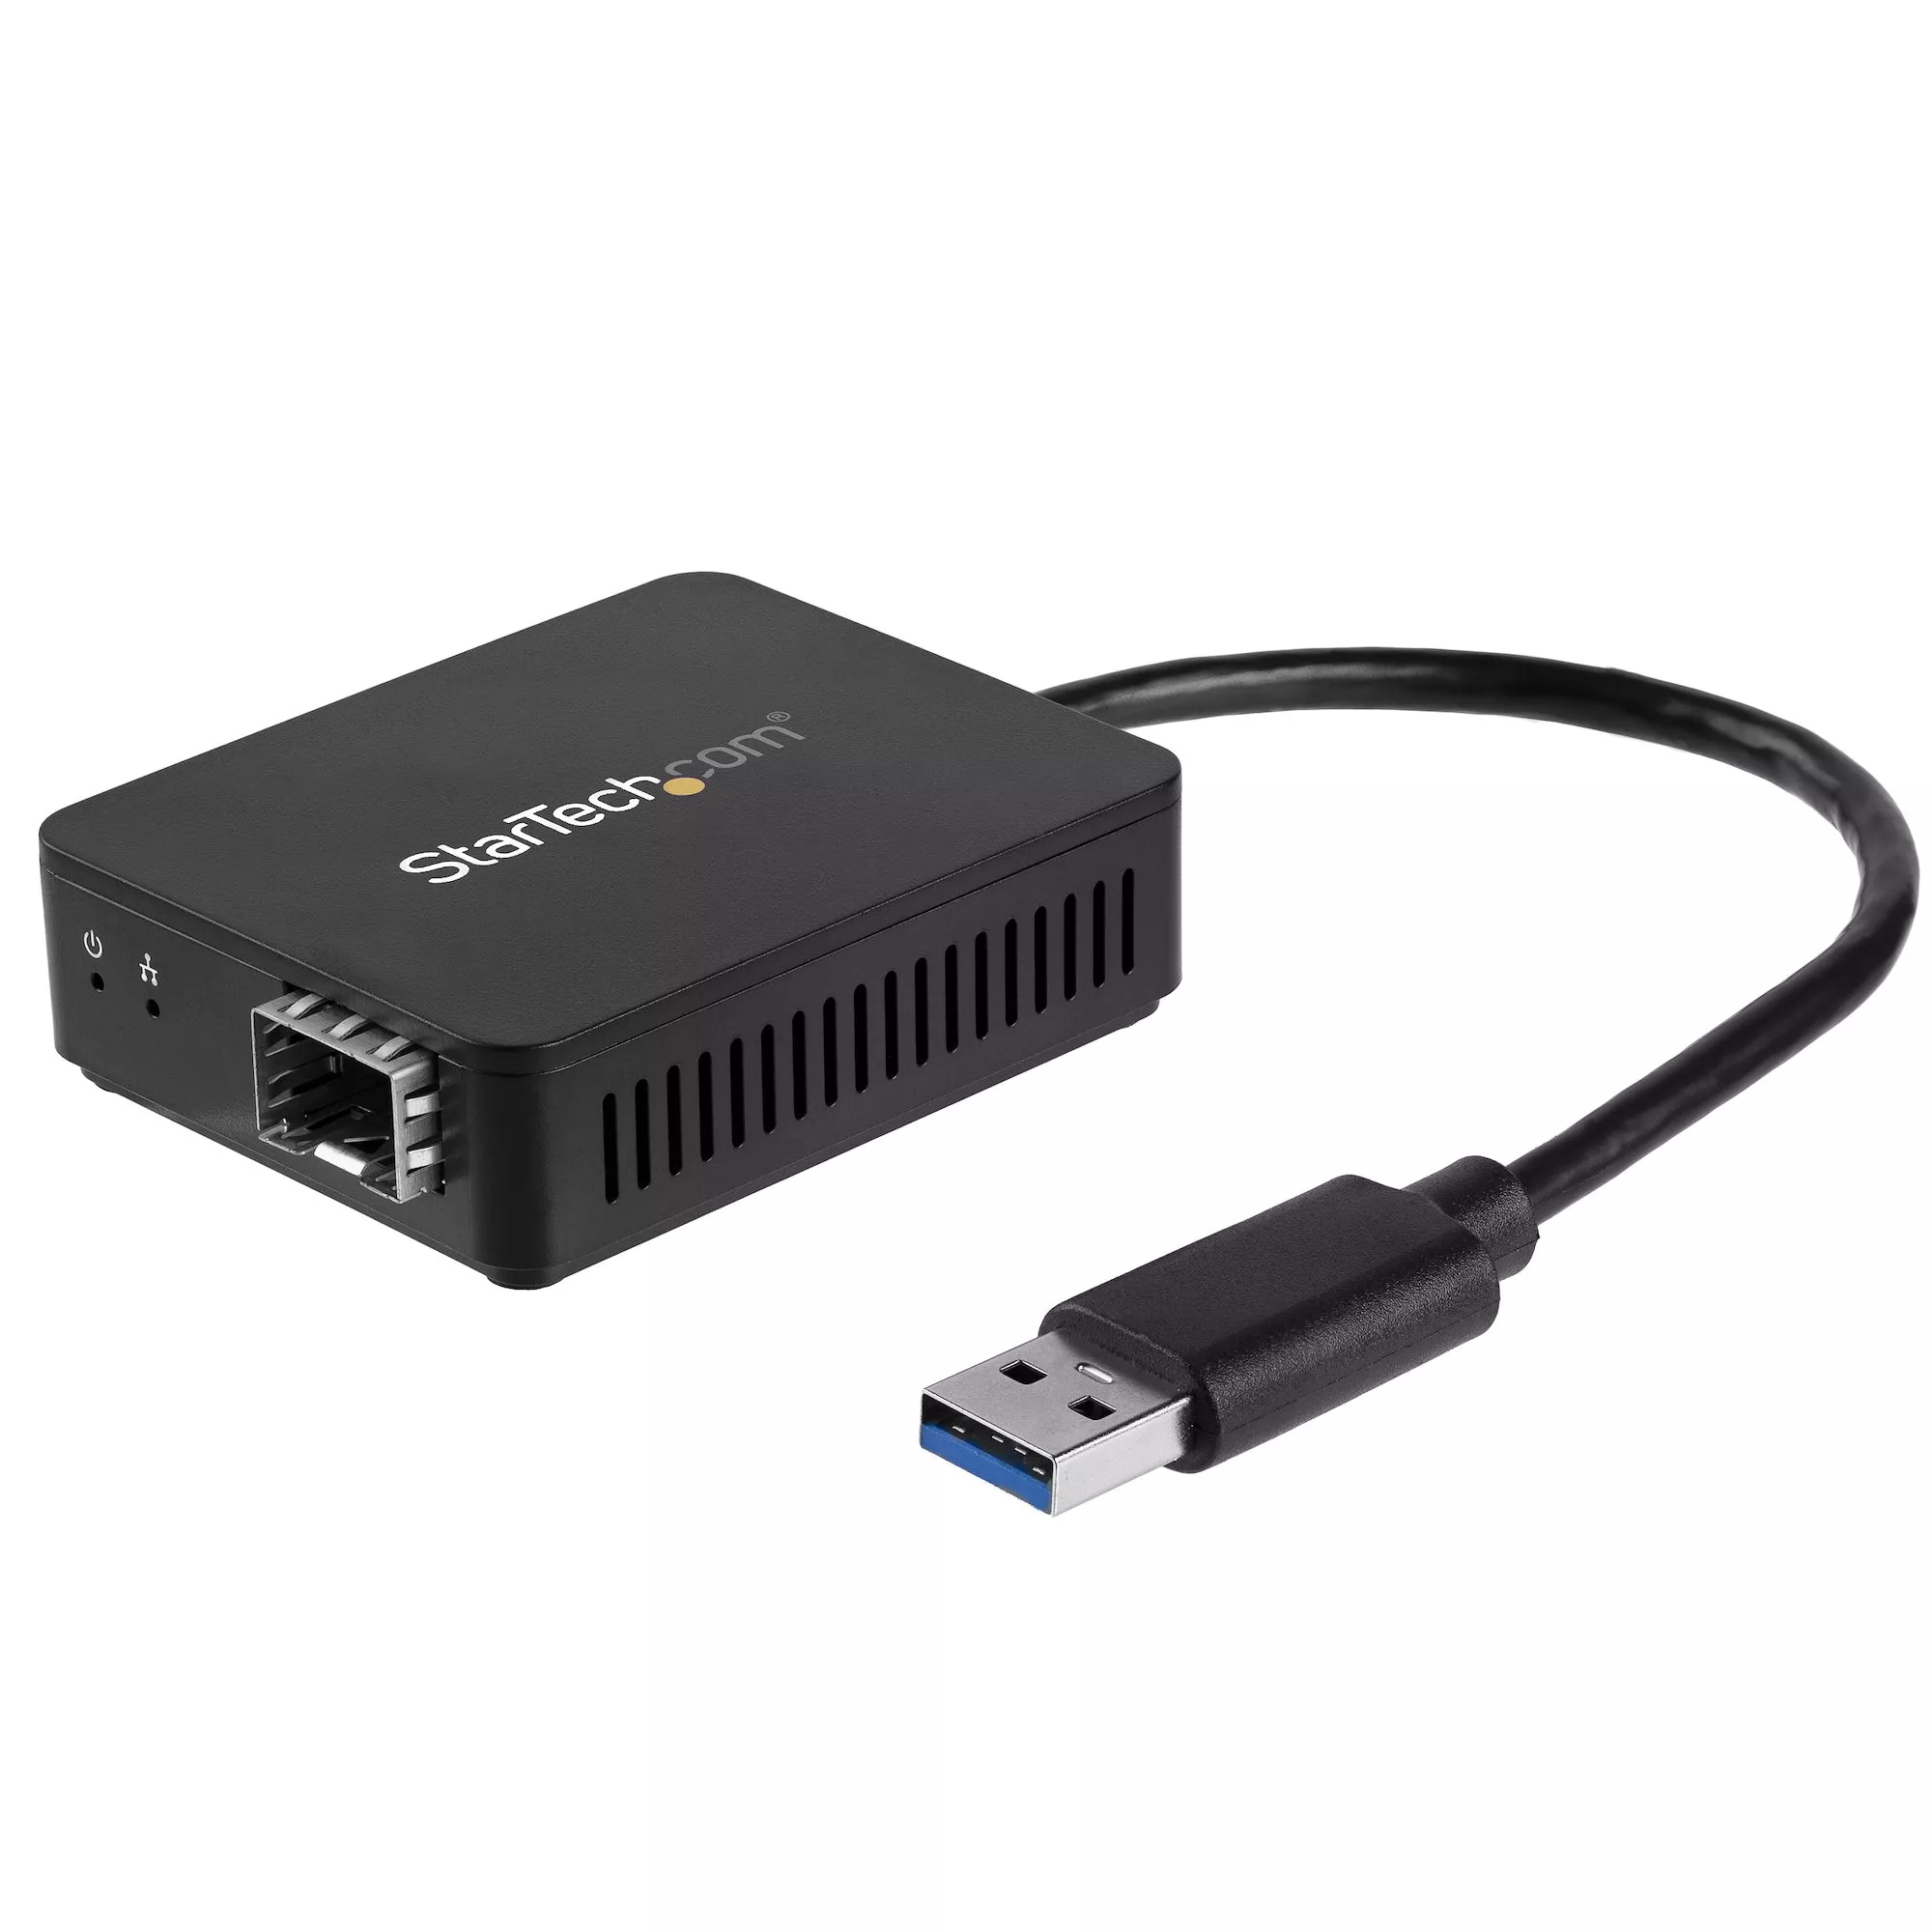 Achat StarTech.com Convertisseur USB 3.0 vers Fibre Optique sur hello RSE